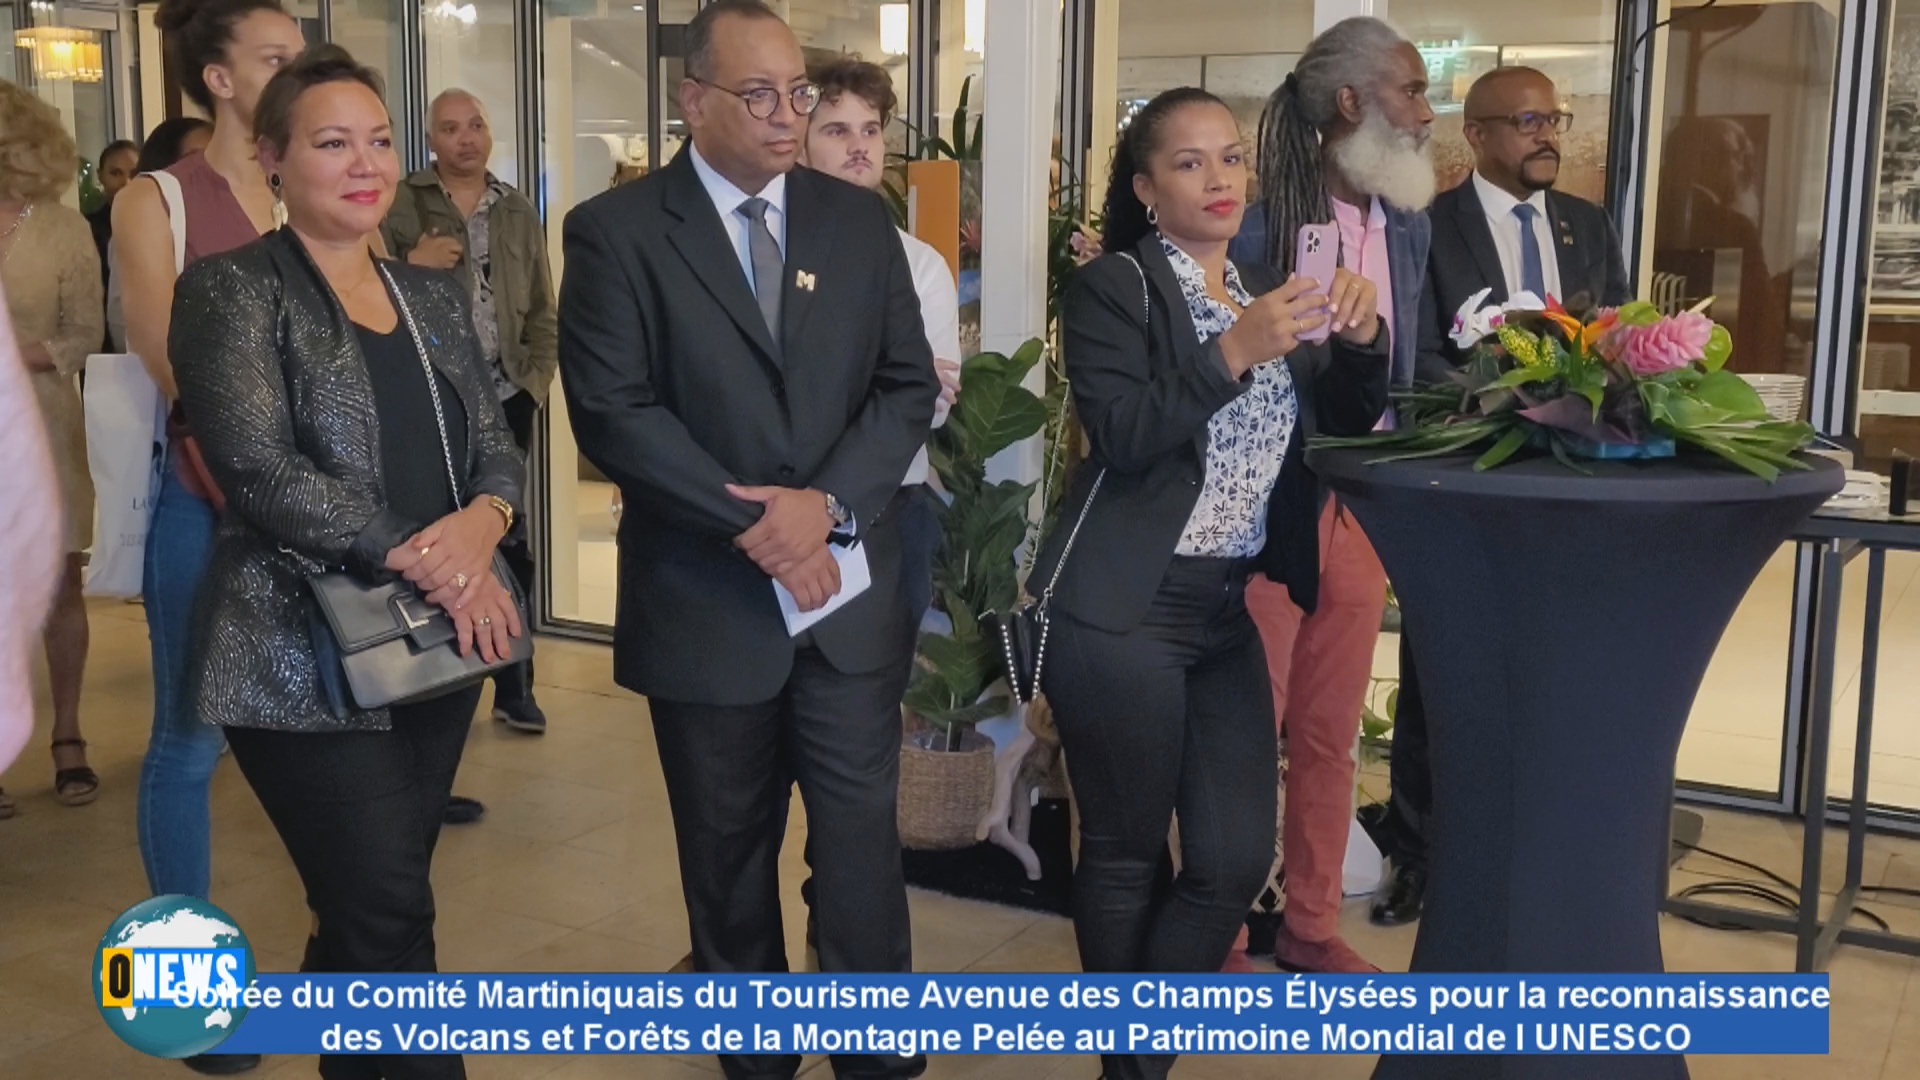 [Vidéo] Soirée à Paris du Comité Martiniquais du tourisme. Volcans et Forêts de la Montagne Pelée au Patrimoine Mondial par l’UNESCO.